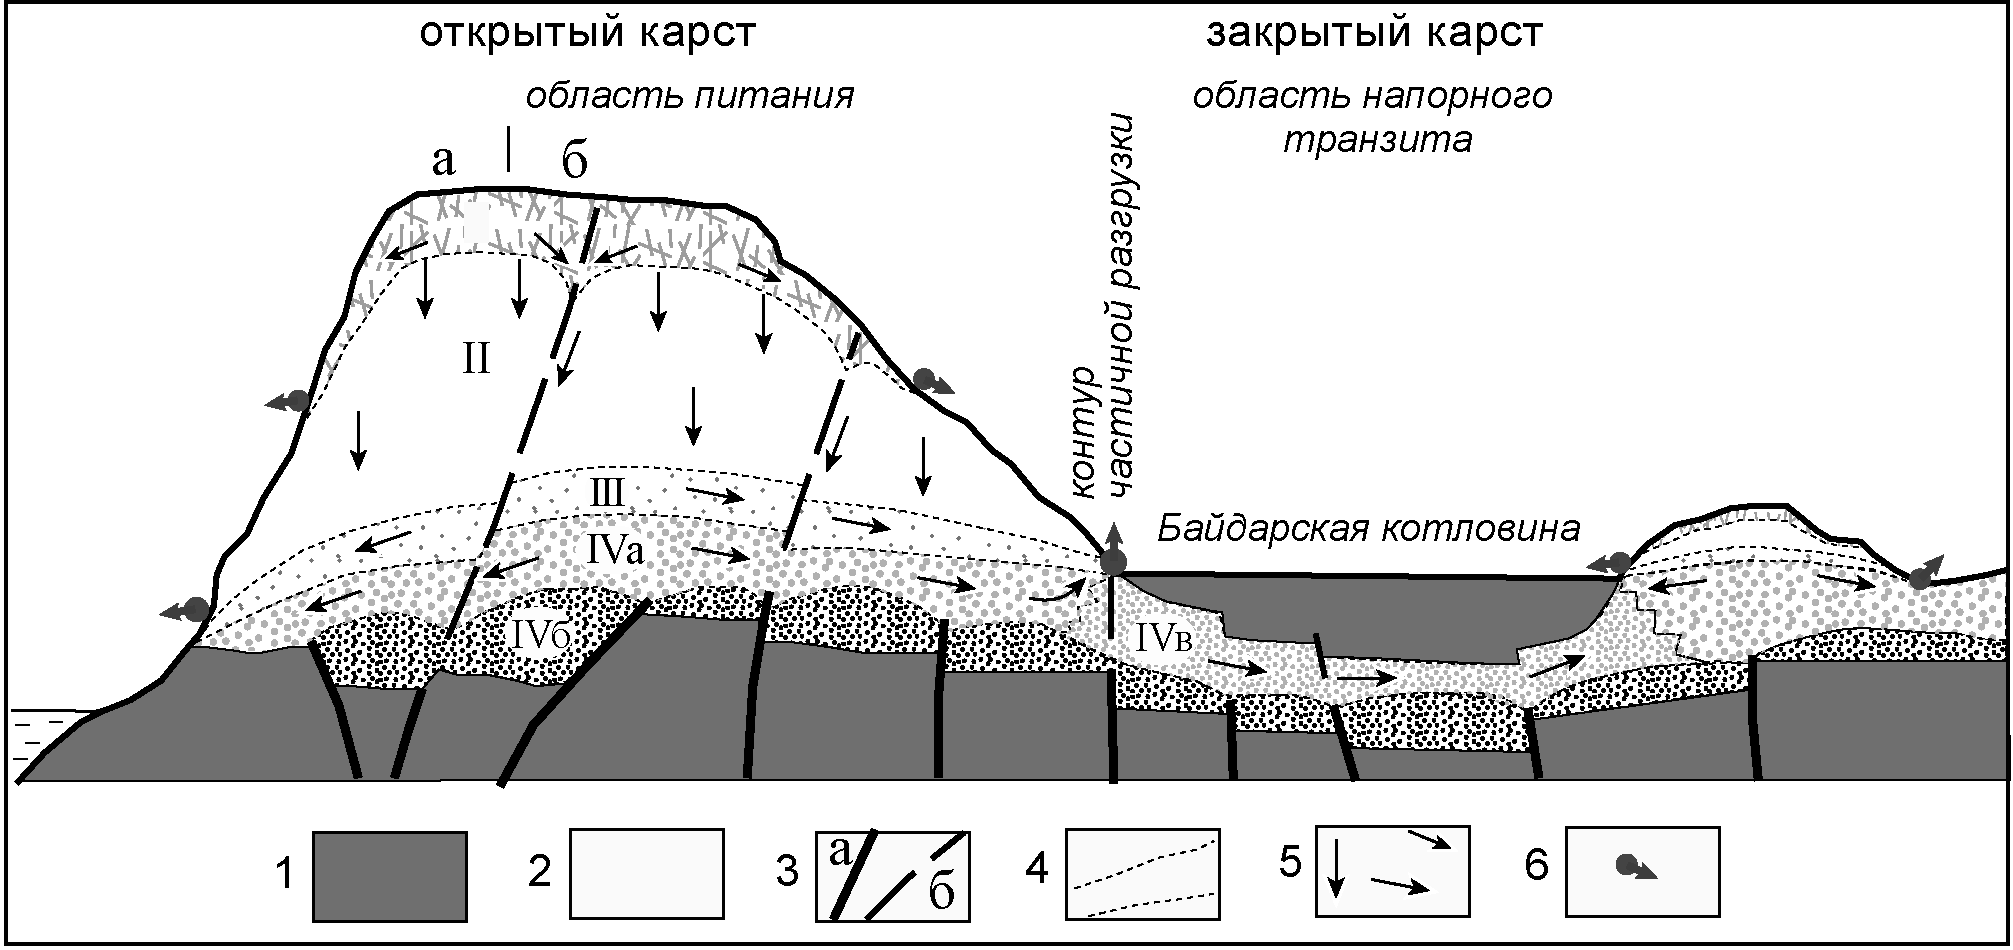 Схема гидродинамической зональности карстовых вод Горного Крыма